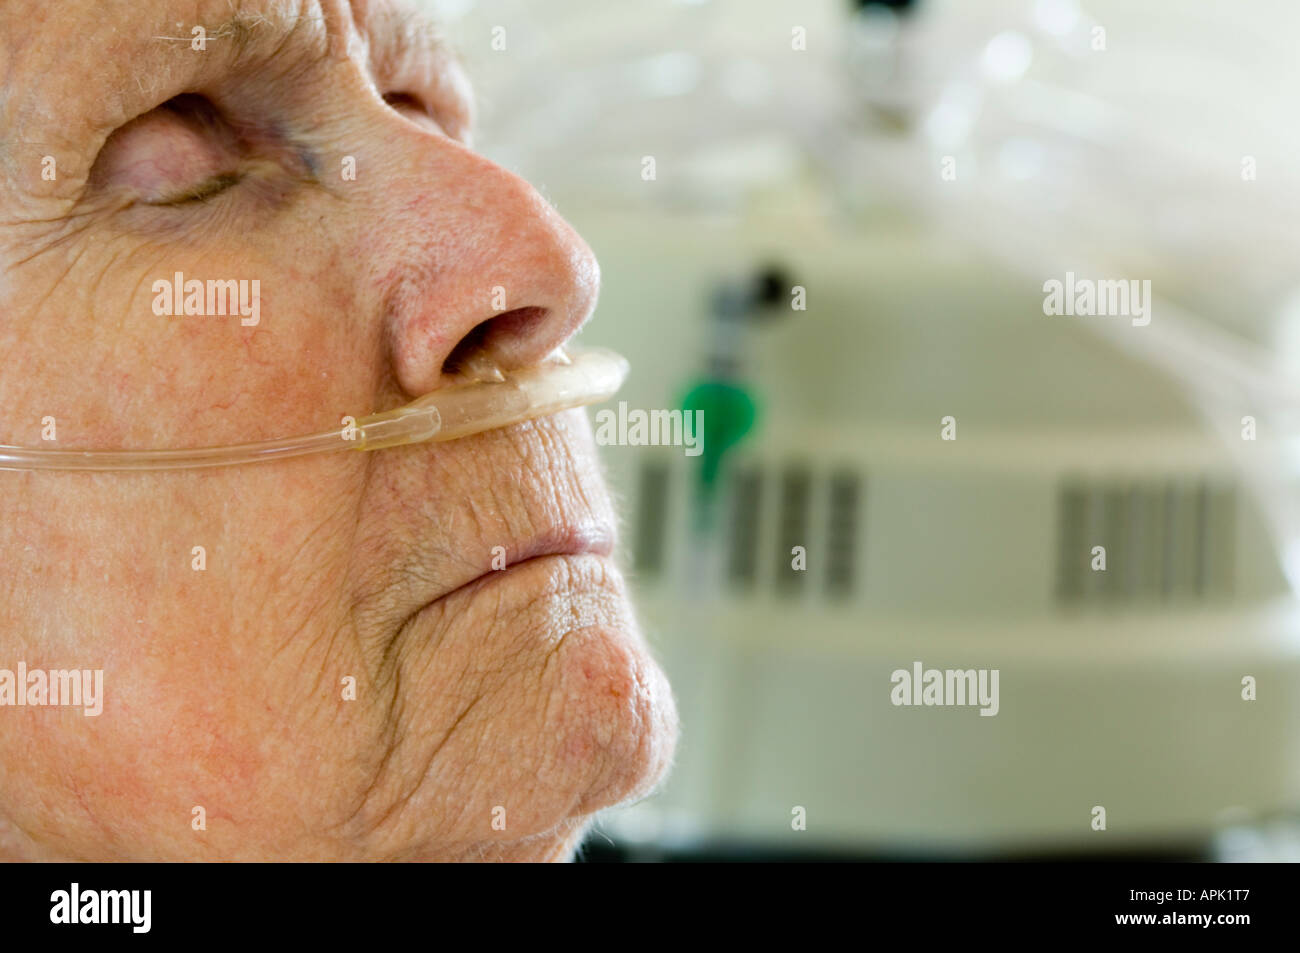 80-anno-vecchia donna con ossigeno cannula nasale nel suo naso in ospedale Foto Stock